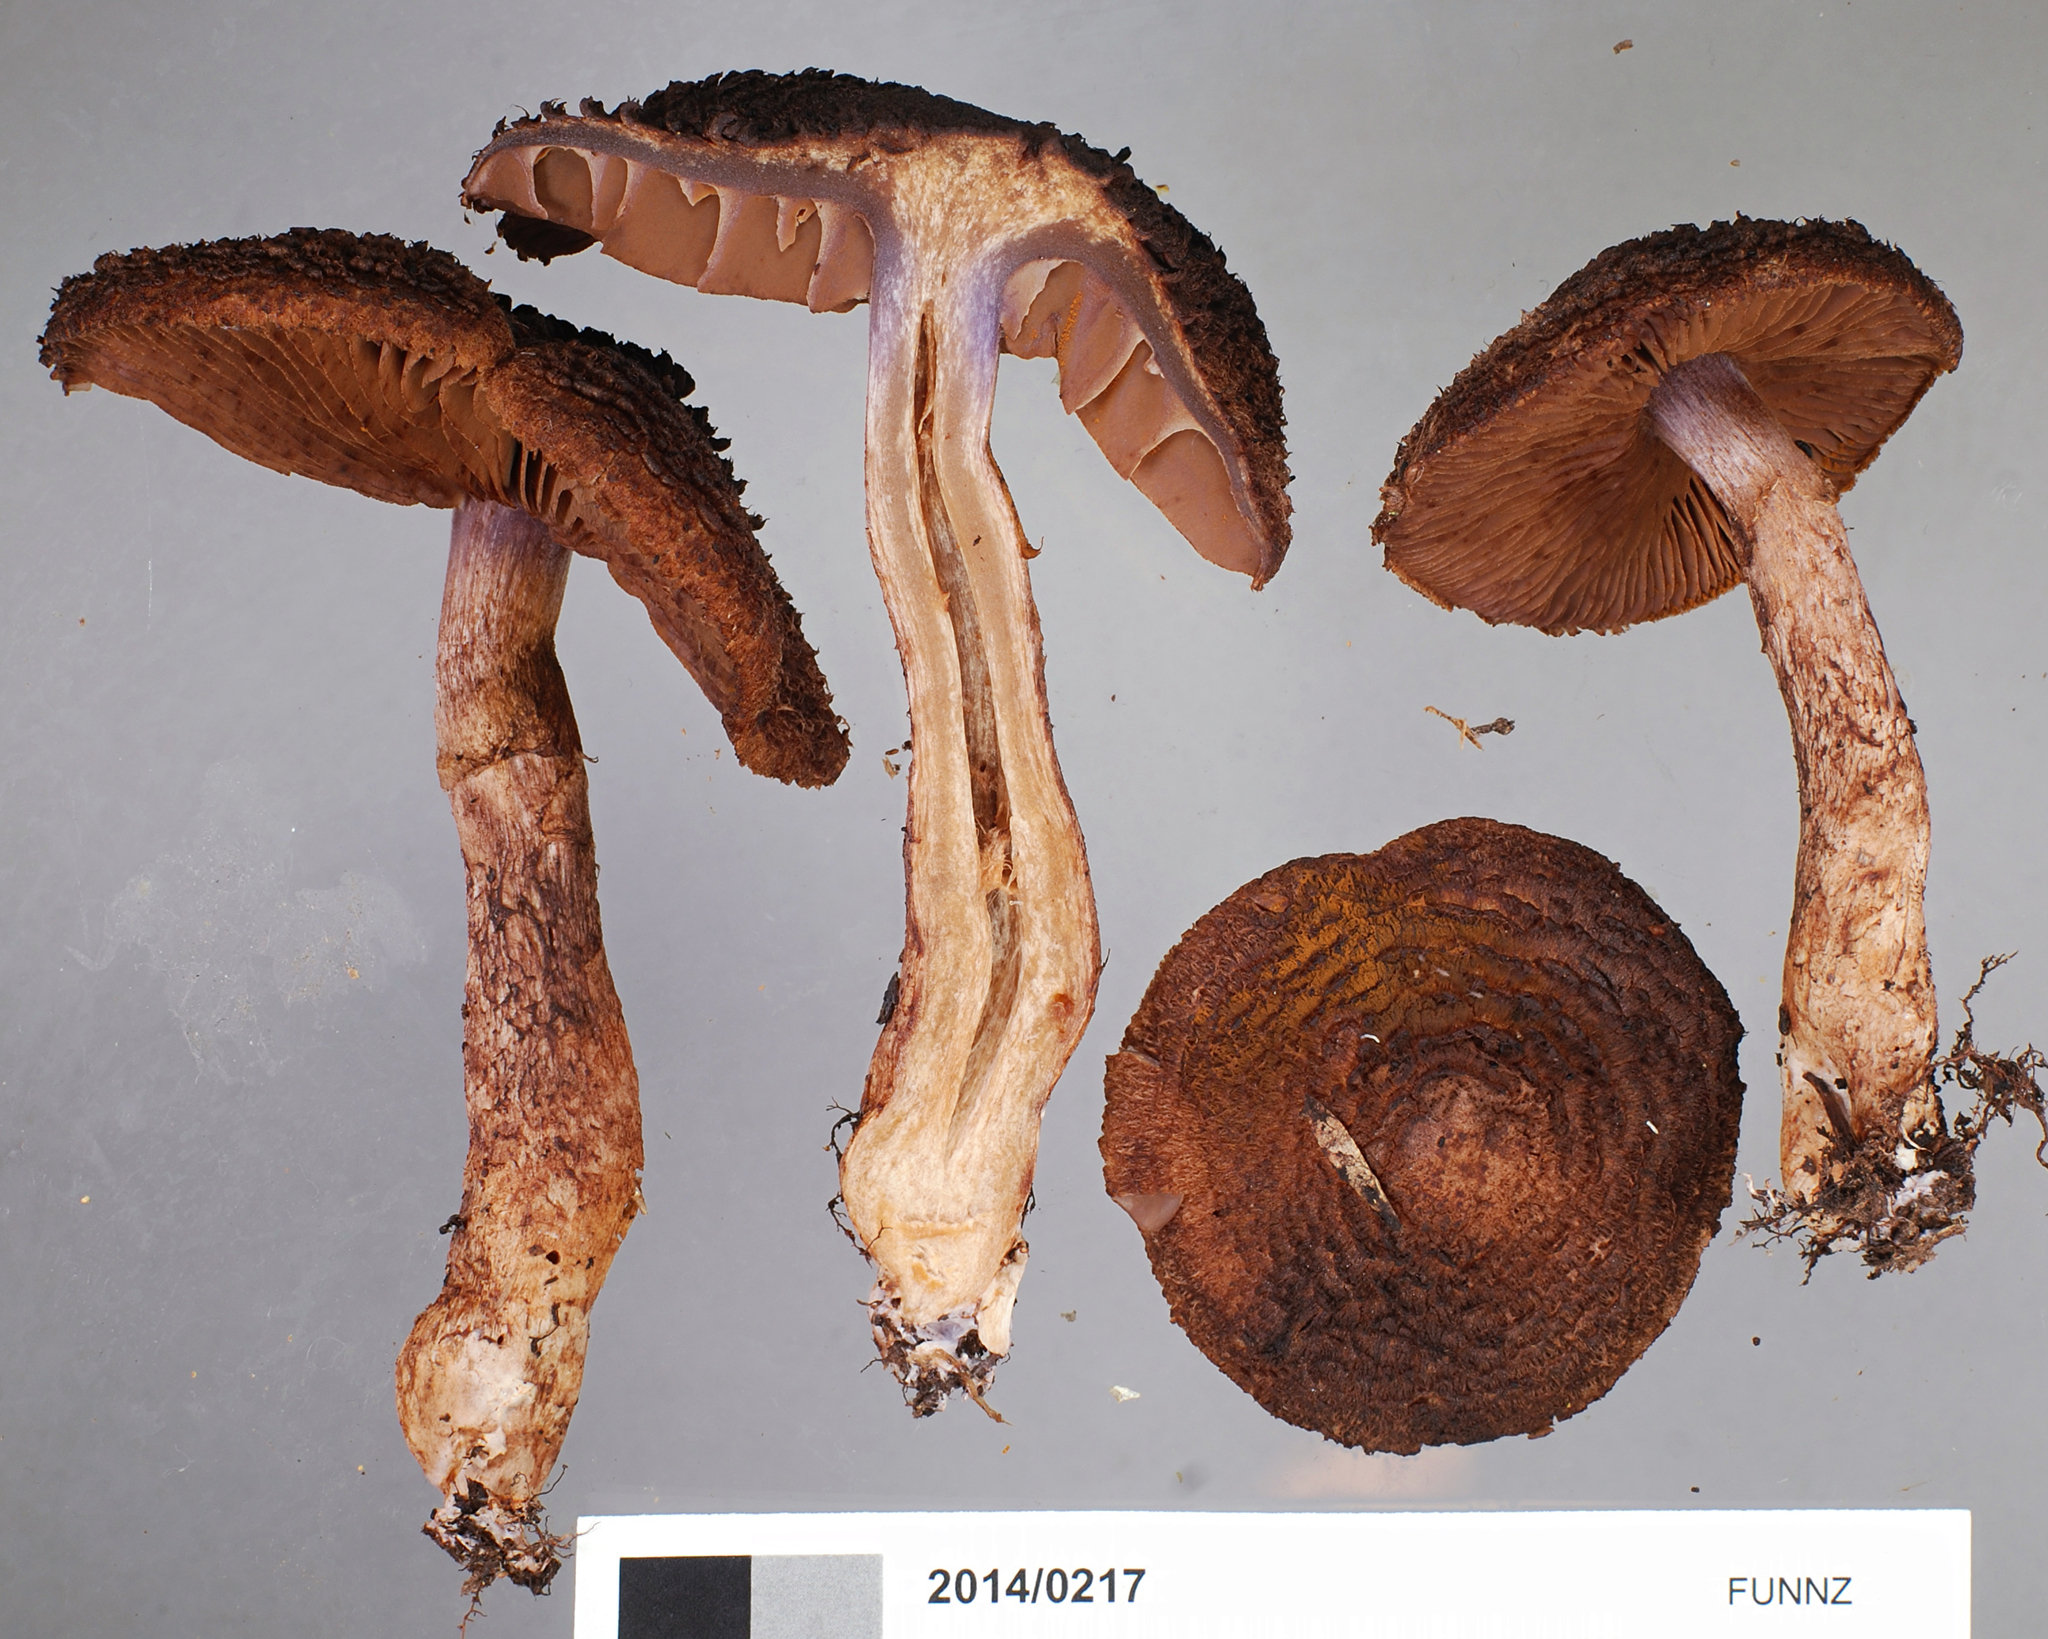 Cortinarius ursus image